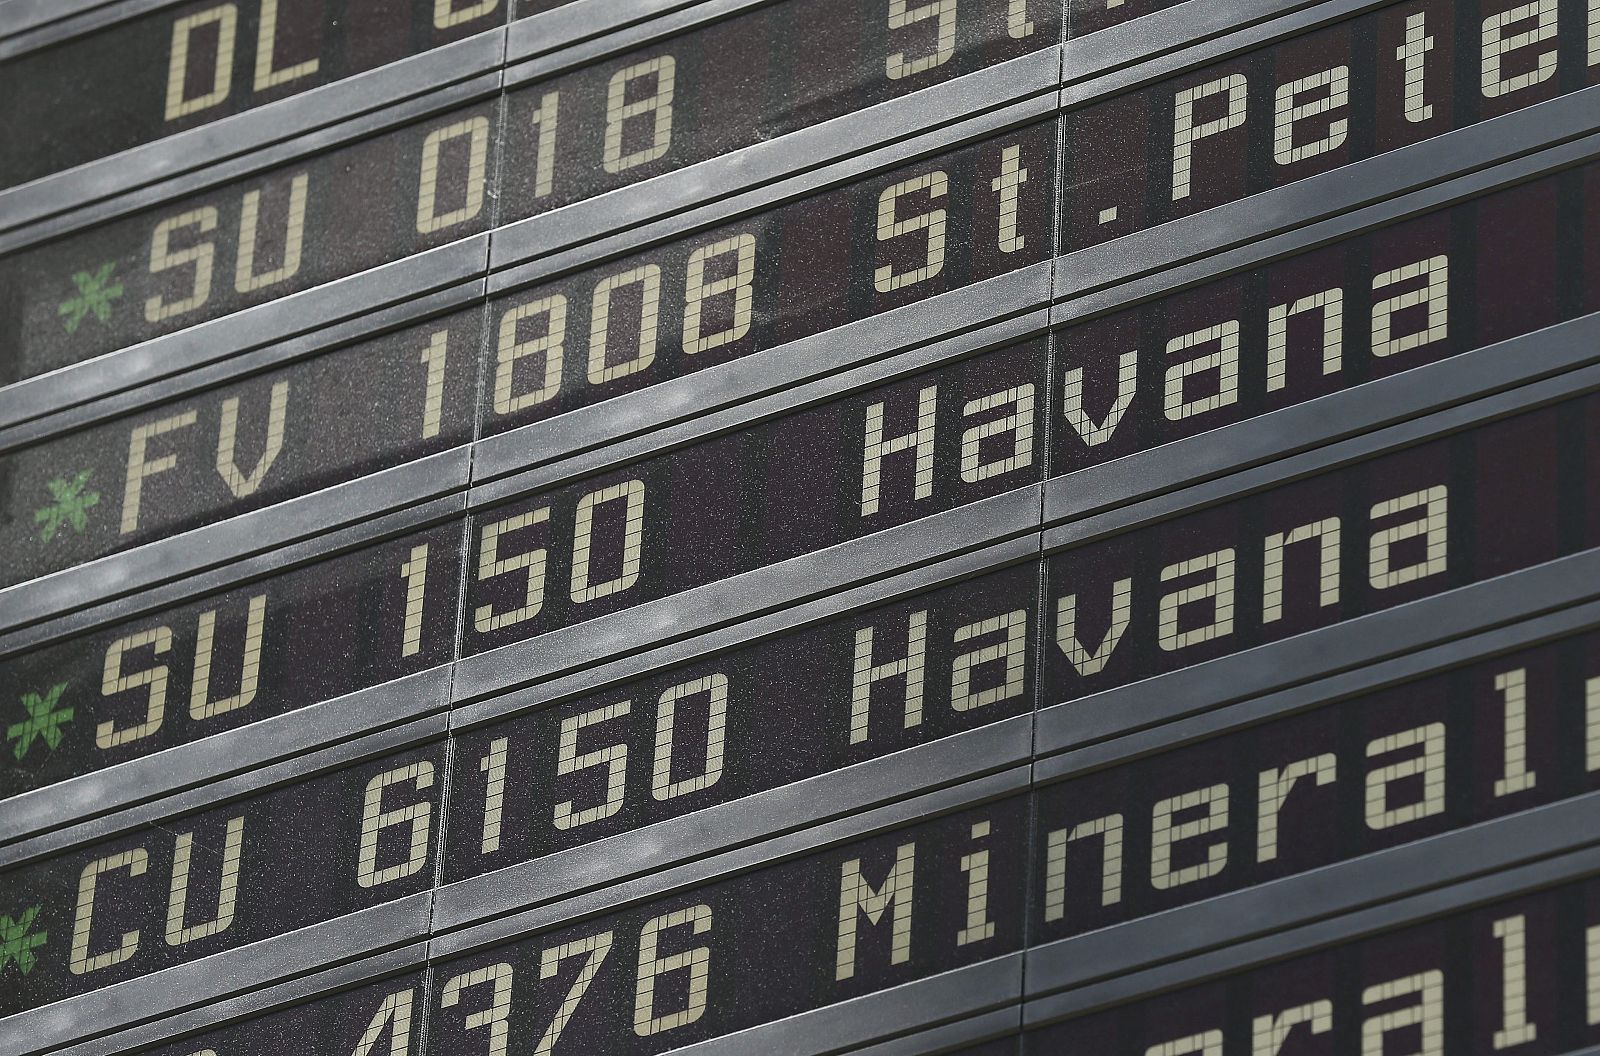 Un panel informativo muestra los detalles de salida del vuelo de la compañía Cubana CU 6150 con destino a La Habana en el aeropuerto de Sheremetyevo en Moscú